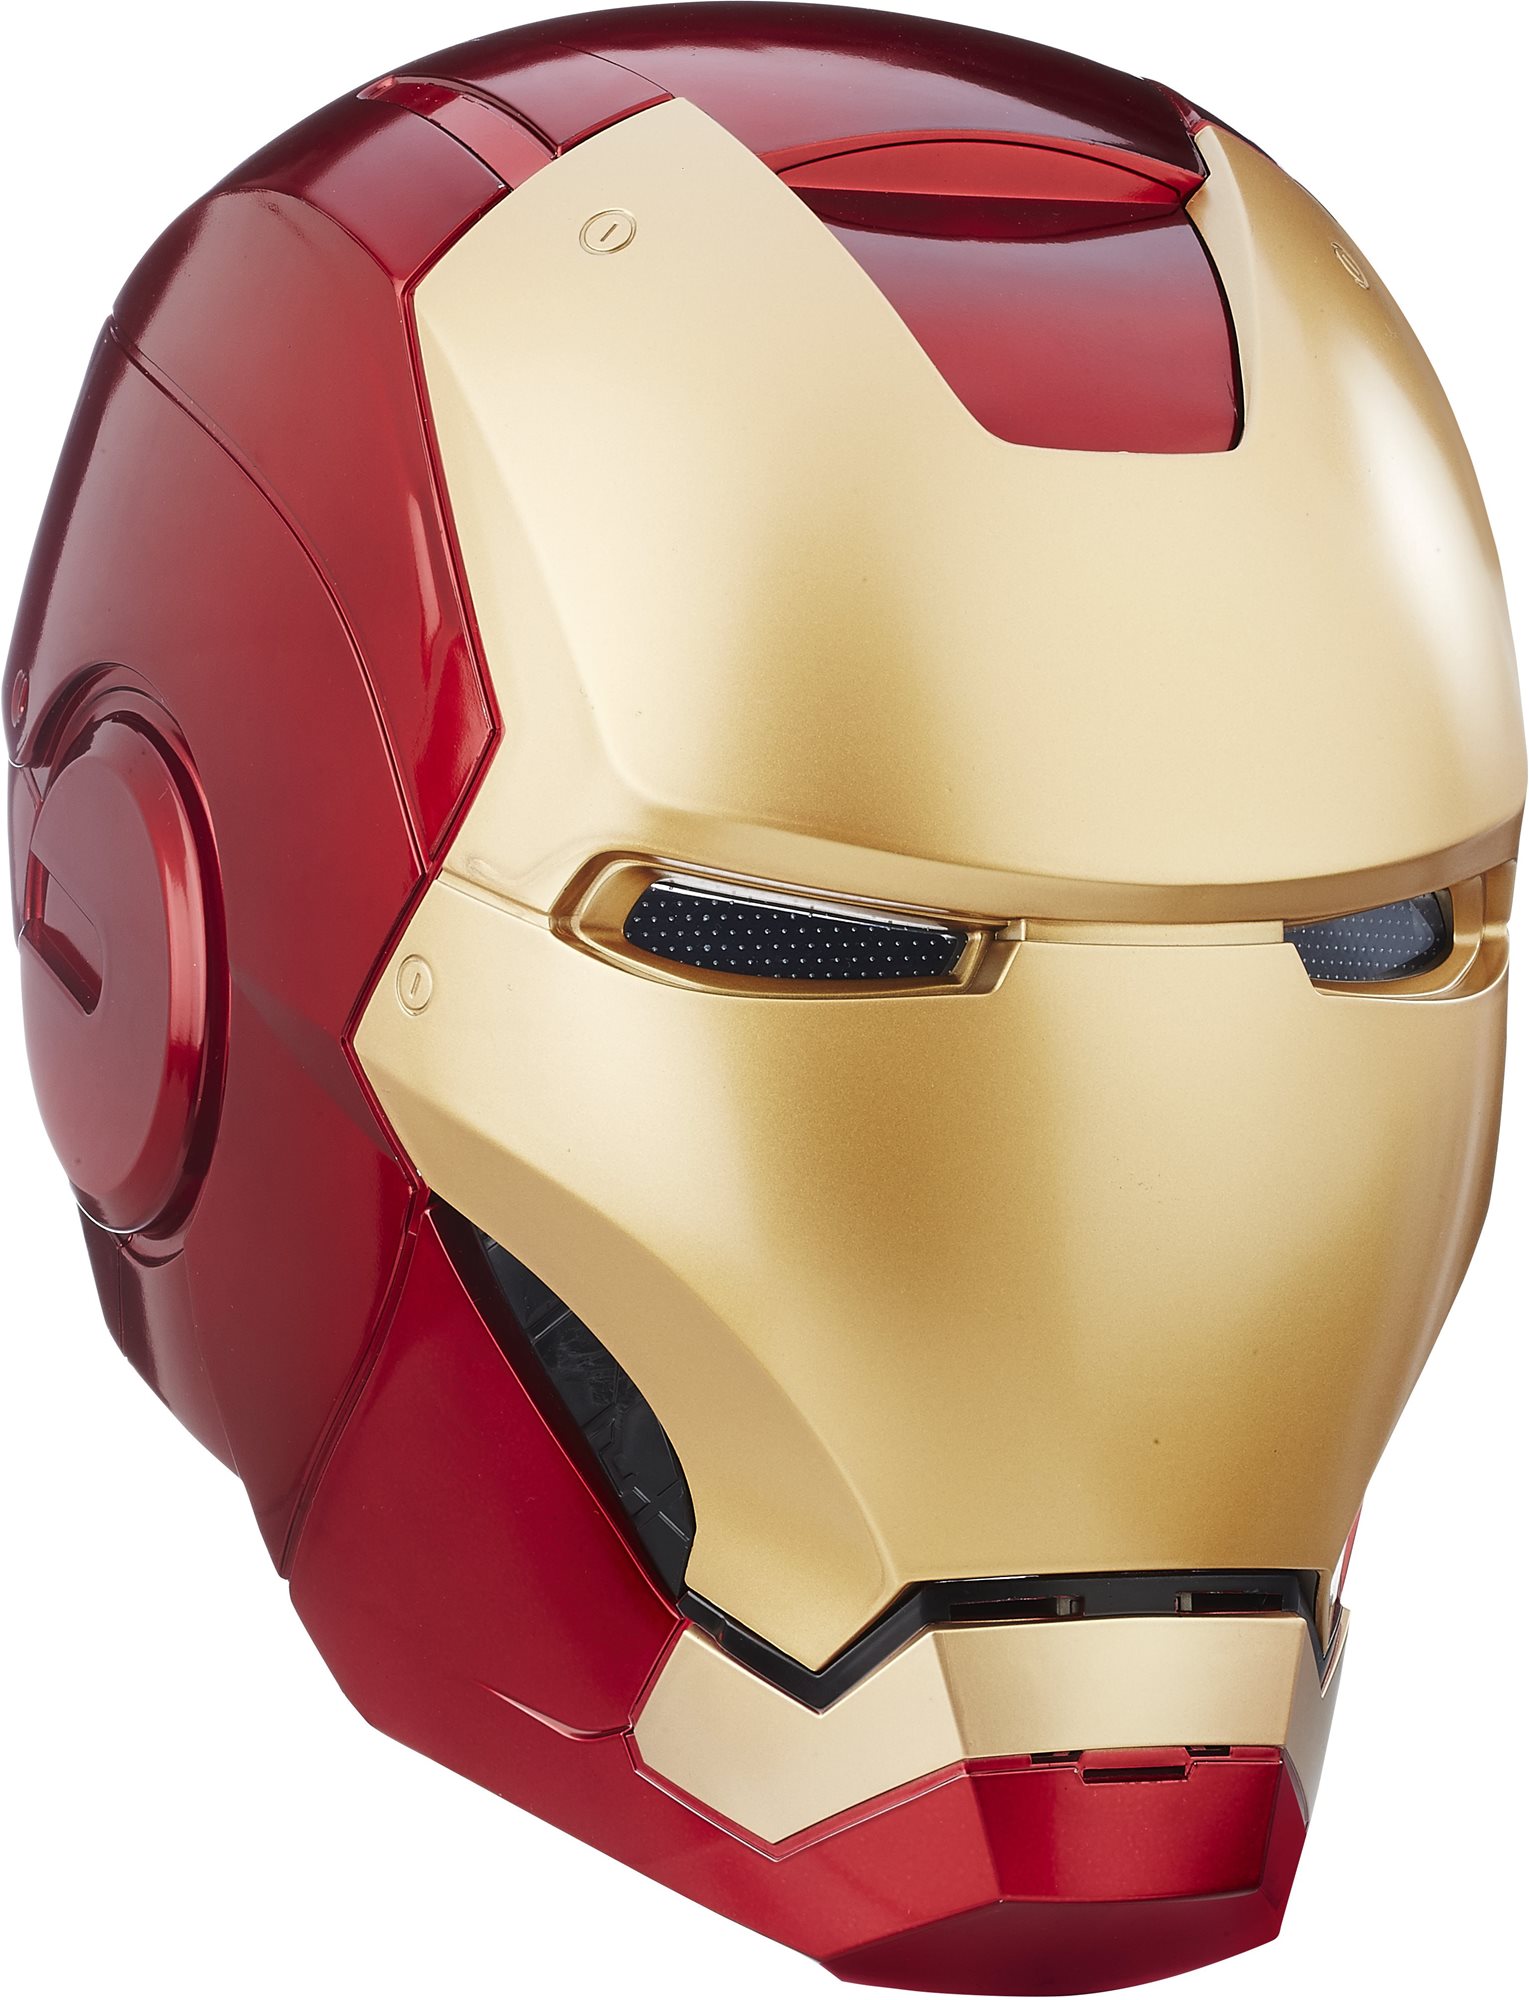 Jelmez kiegészítő Avengers elektronikus sisak Marvel legends Iron man